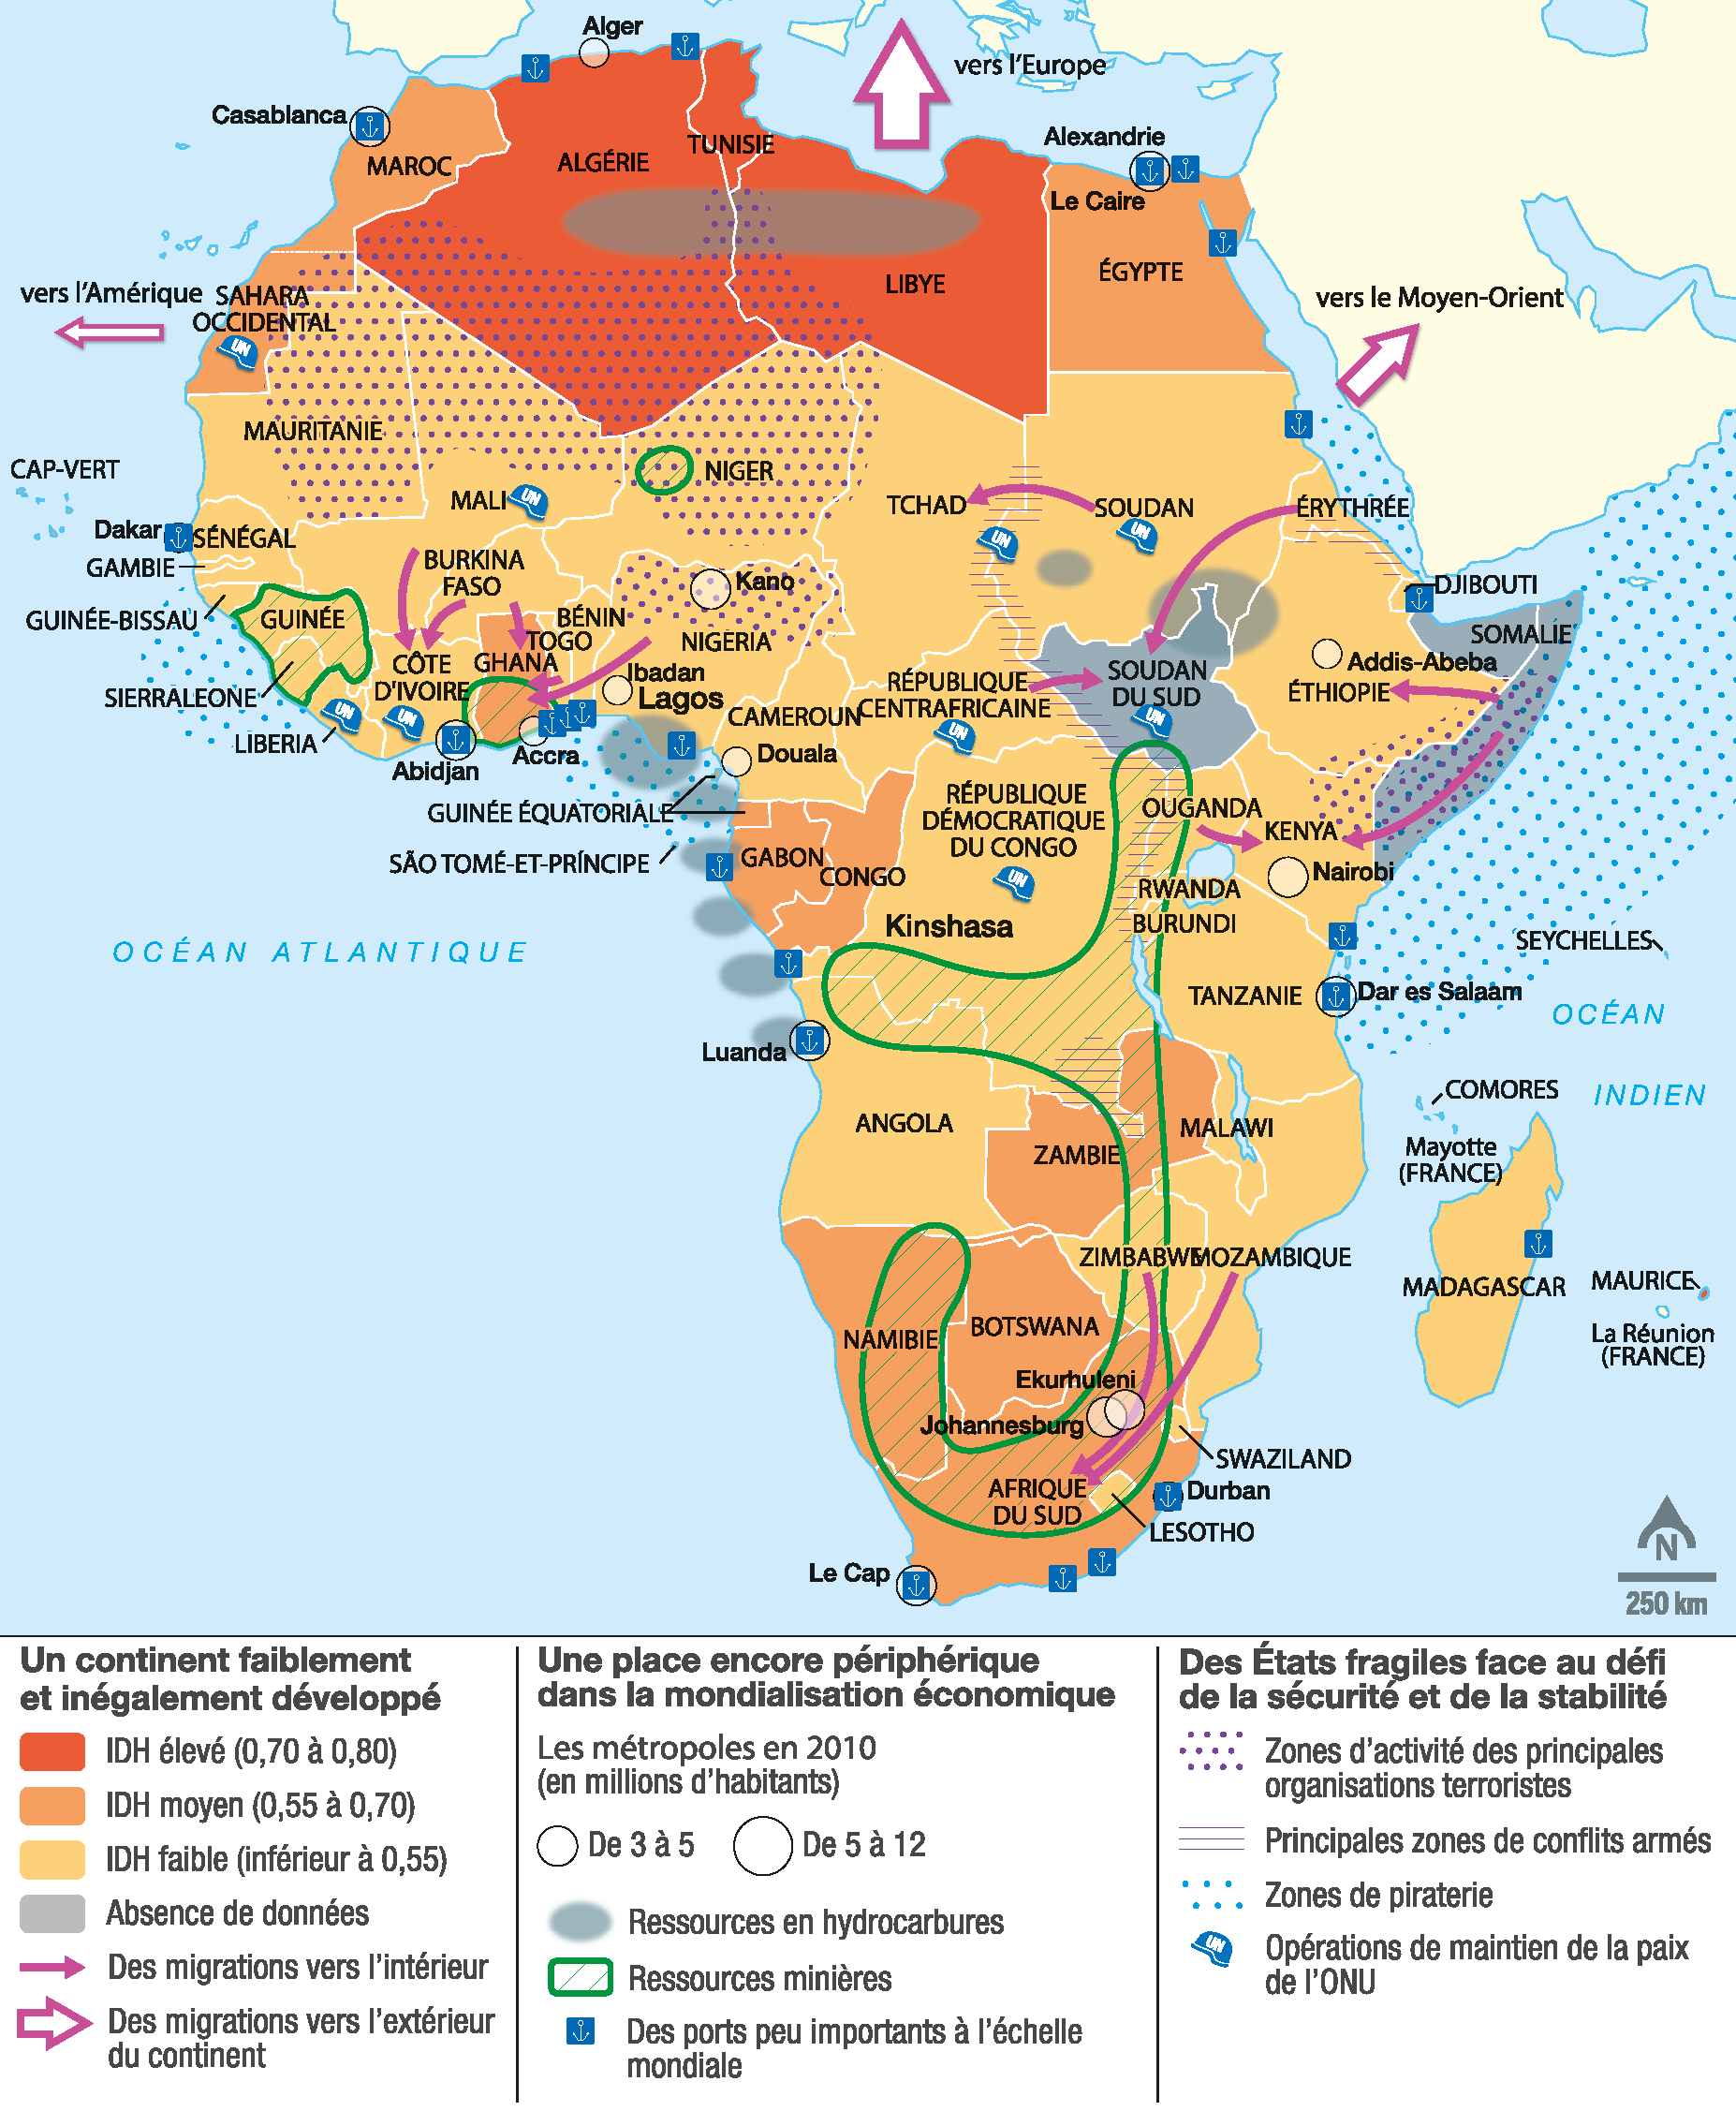 Les dynamiques du continent africain